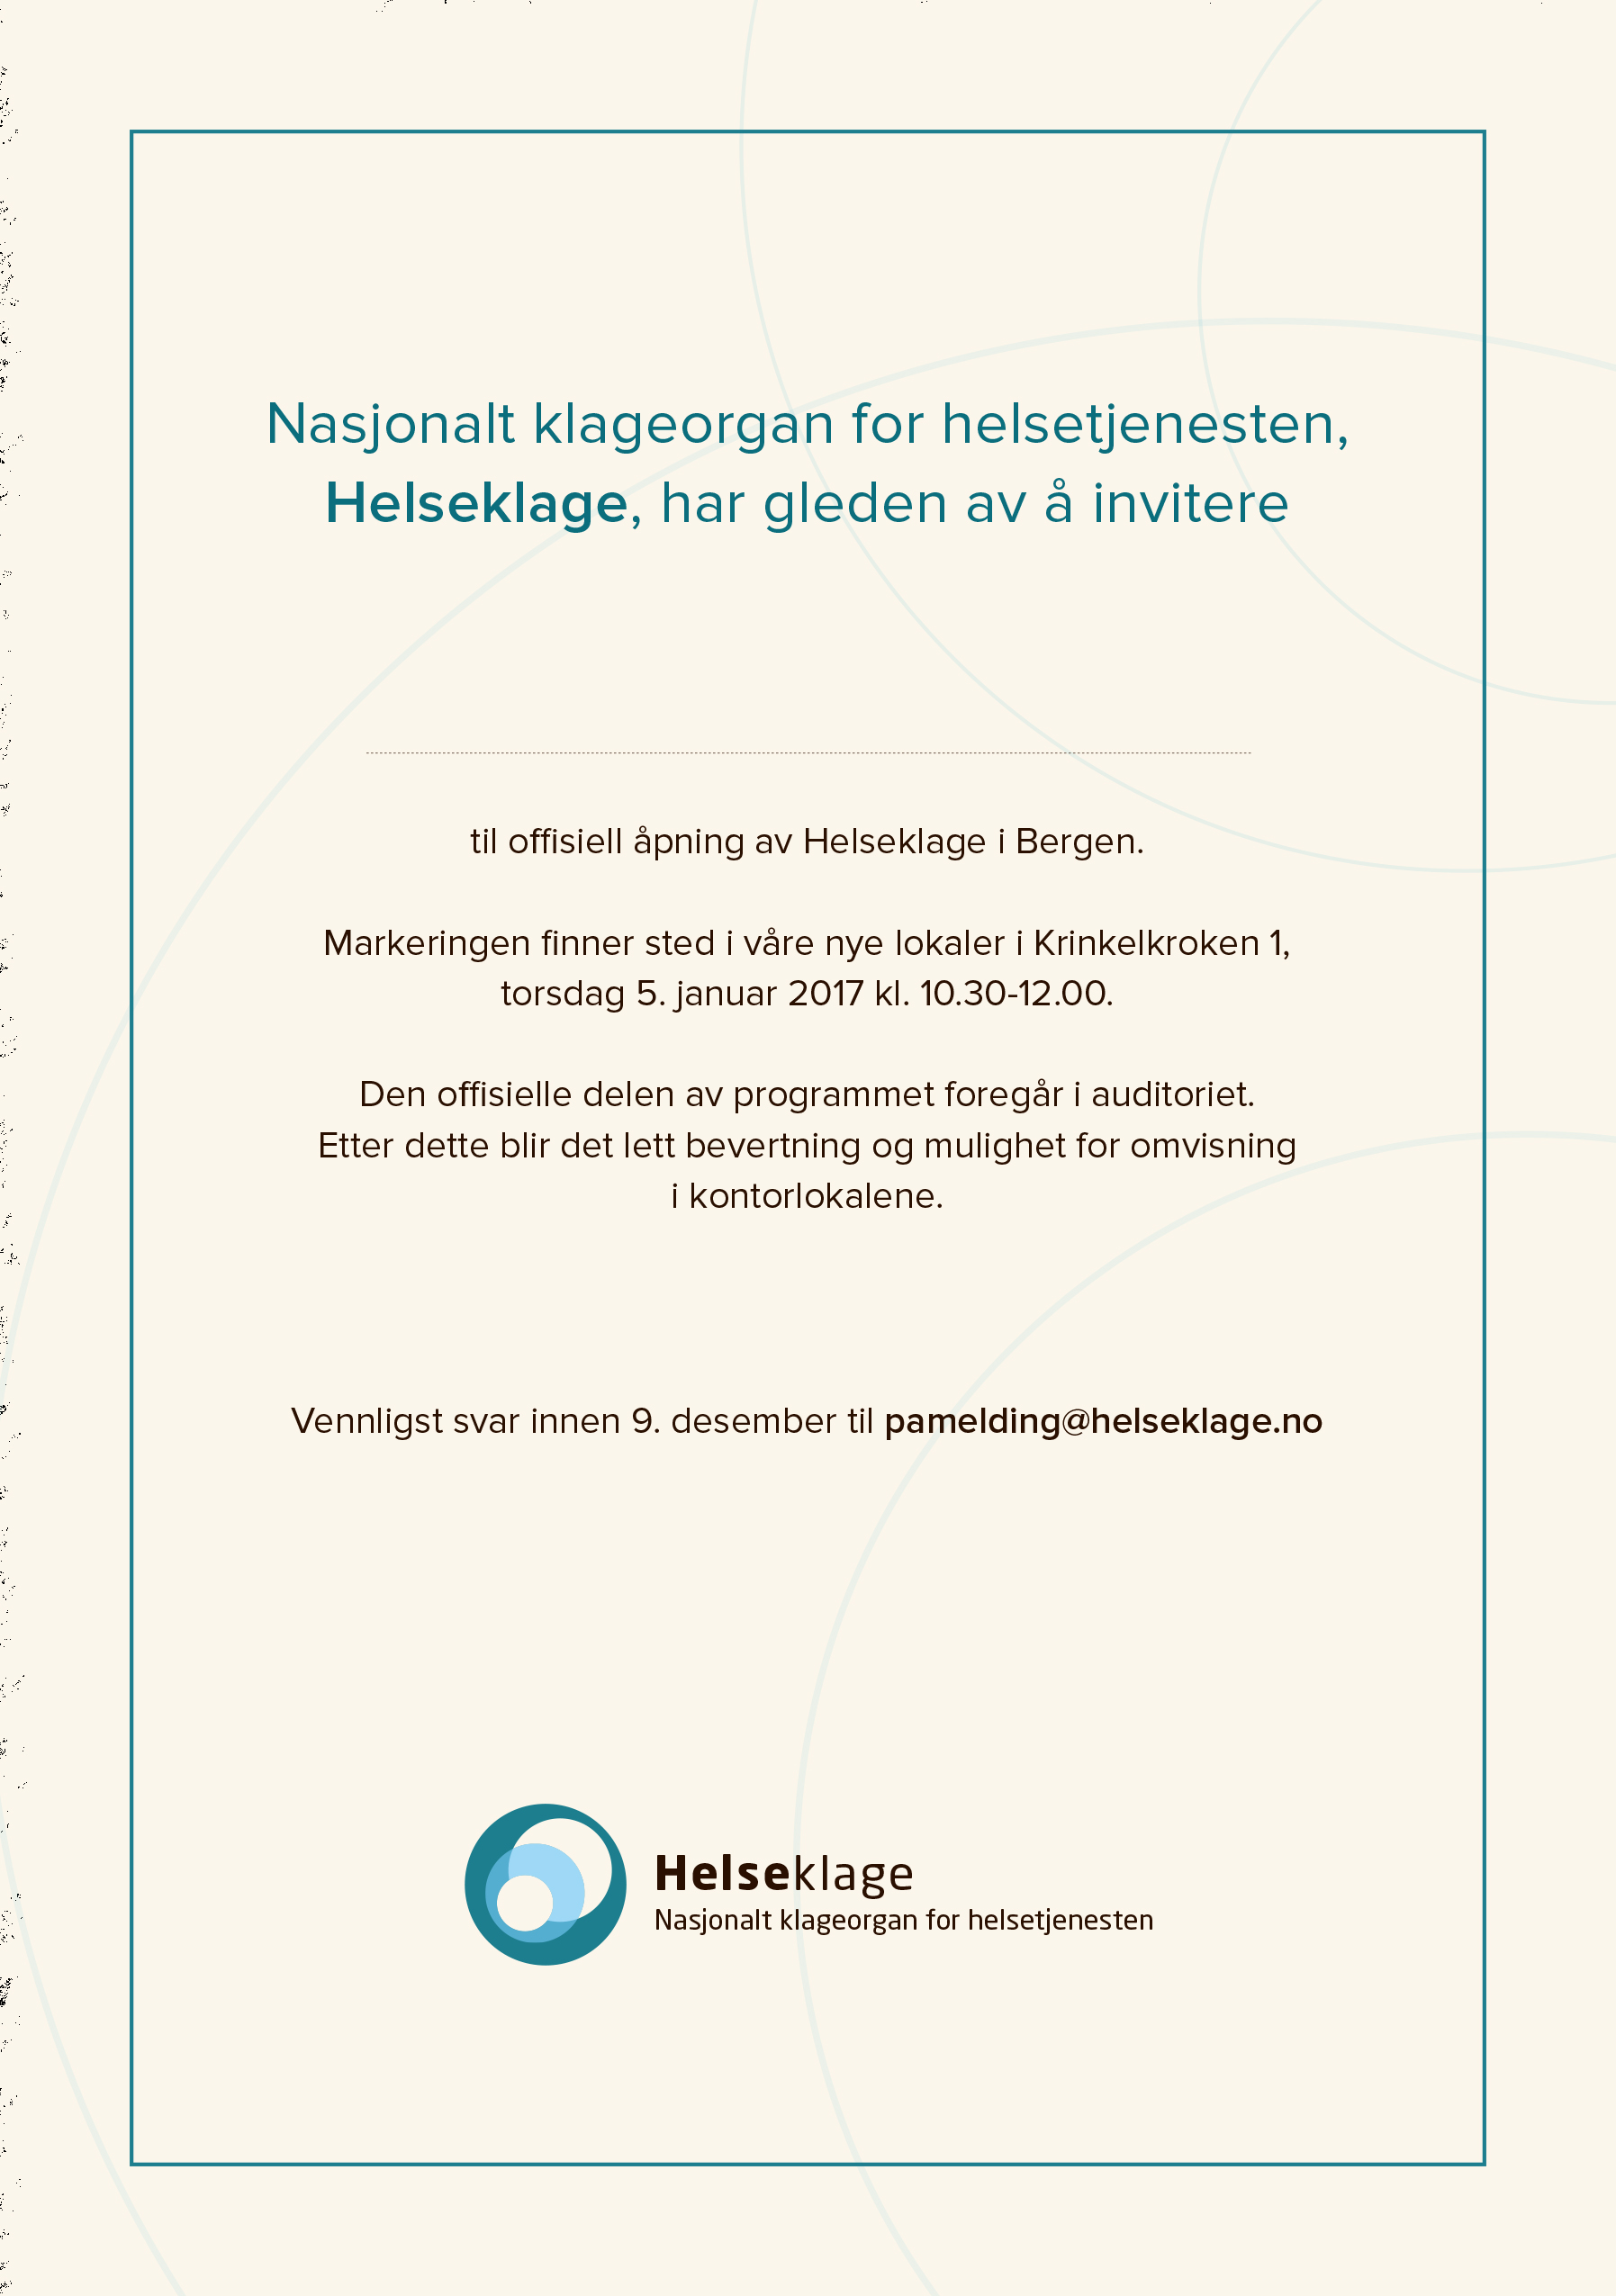 Invitasjons til åpningen av Nasjonalt klageorgan for helsetjenesten (Helseklage) i Bergen.